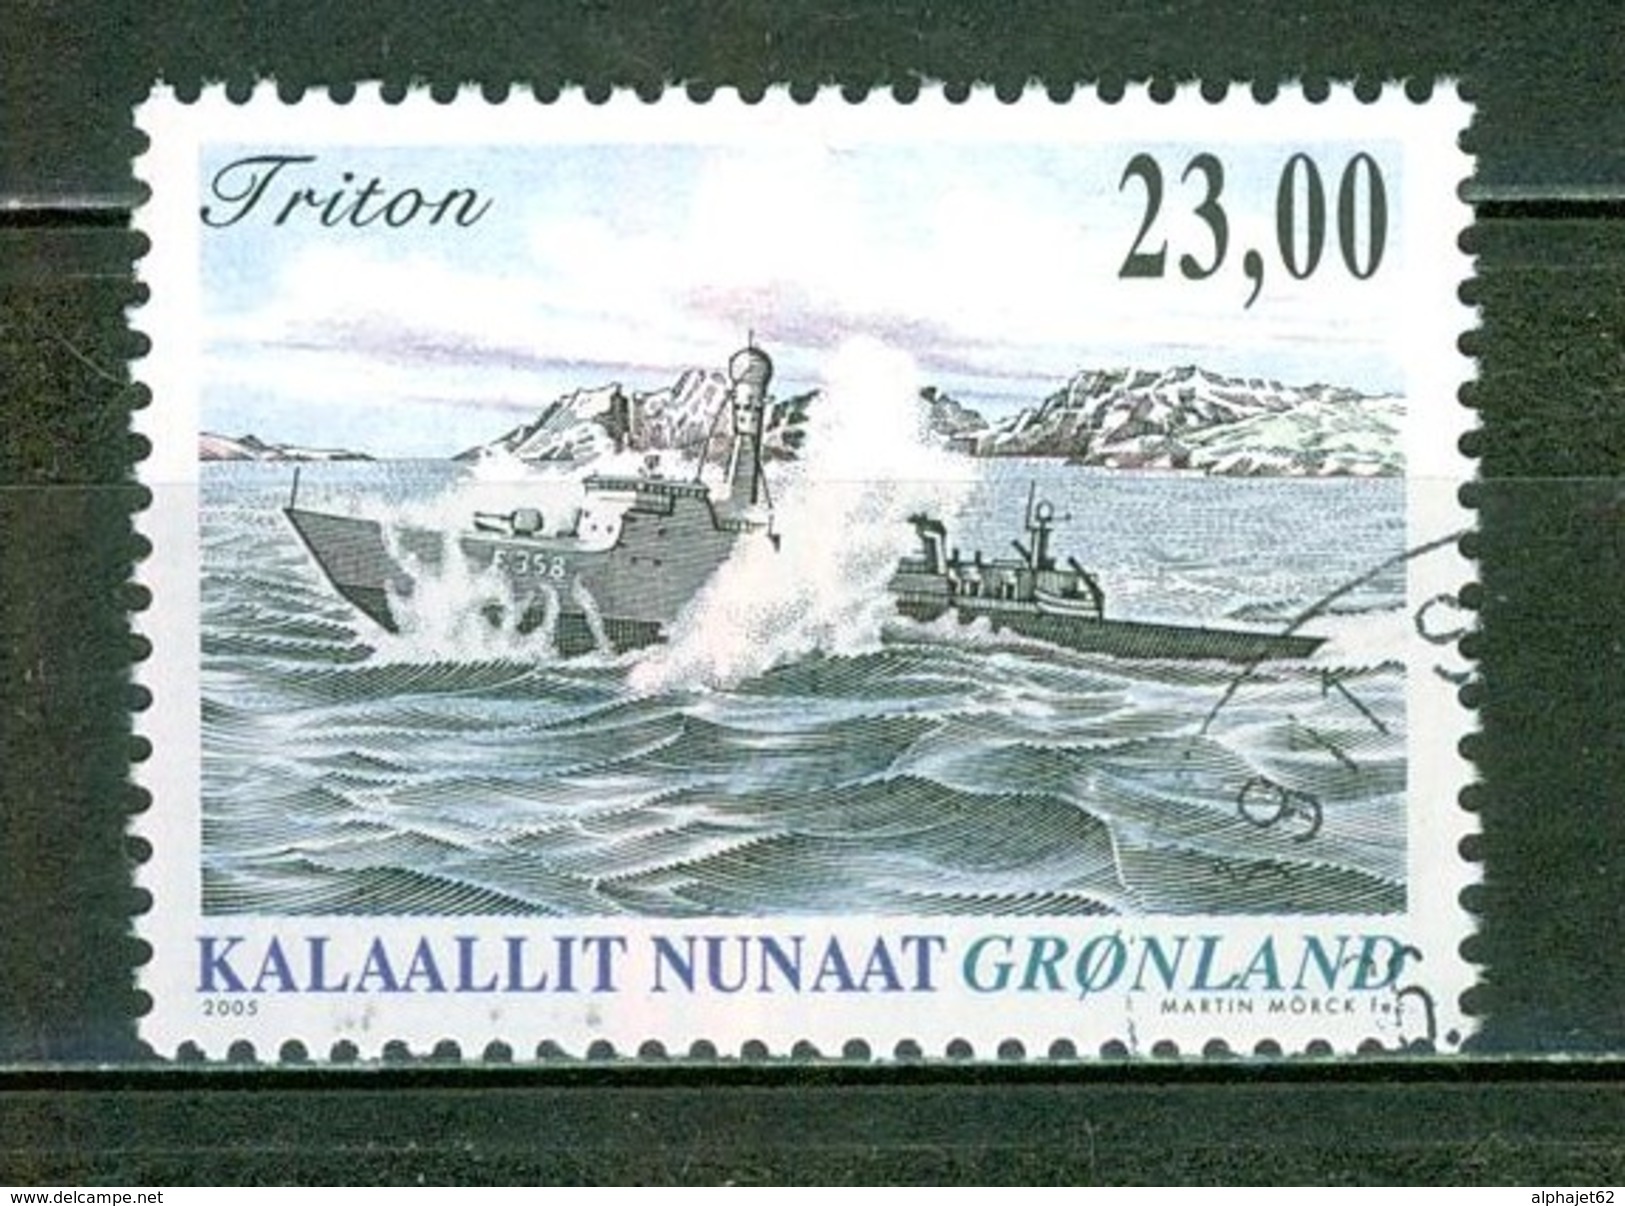 Bateaux, Navires - GROENLAND - Vedette Rapide "Triton" - N° 423 - 2005 - Oblitérés